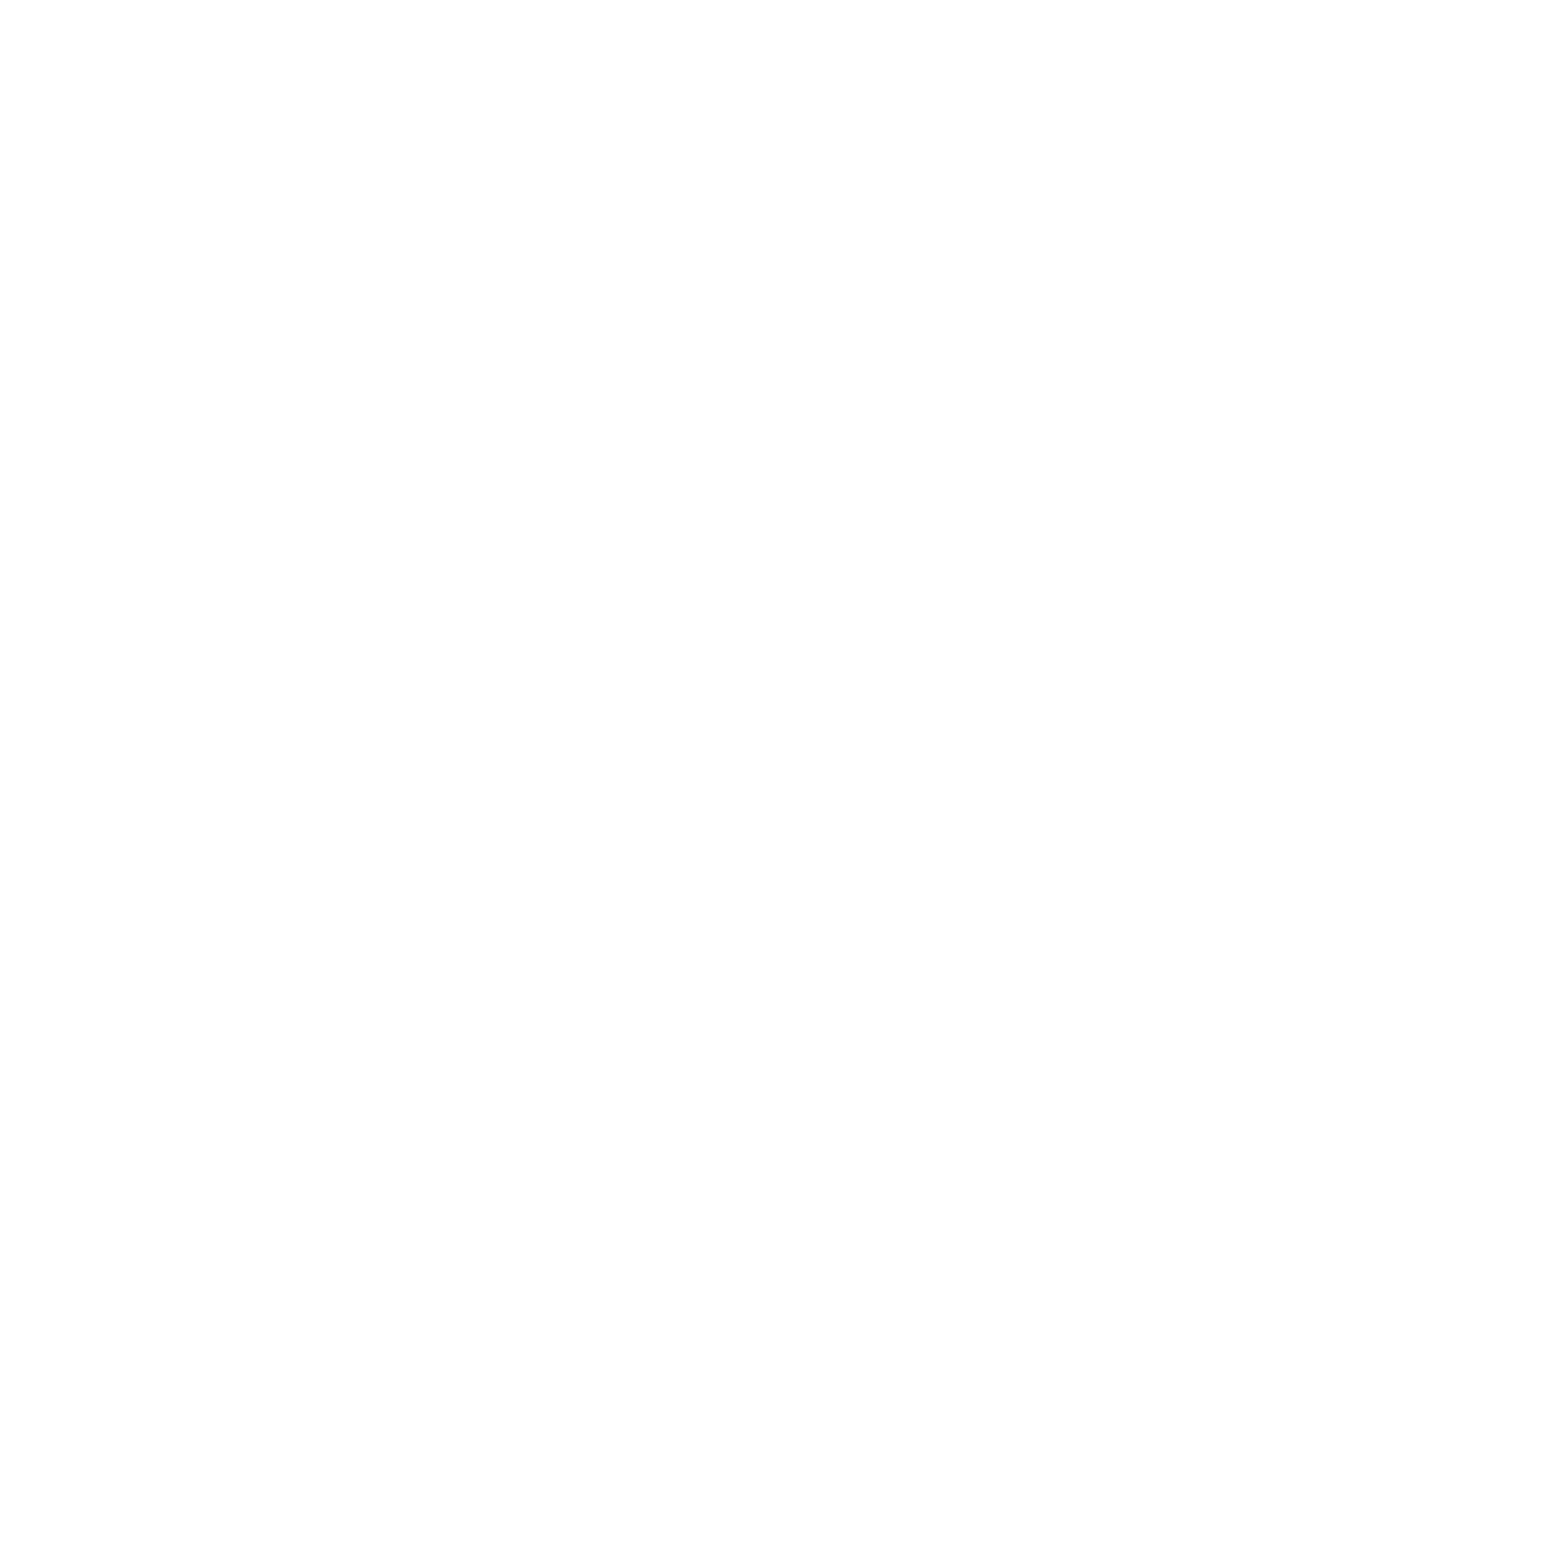 Enad Global 7 logo for dark backgrounds (transparent PNG)